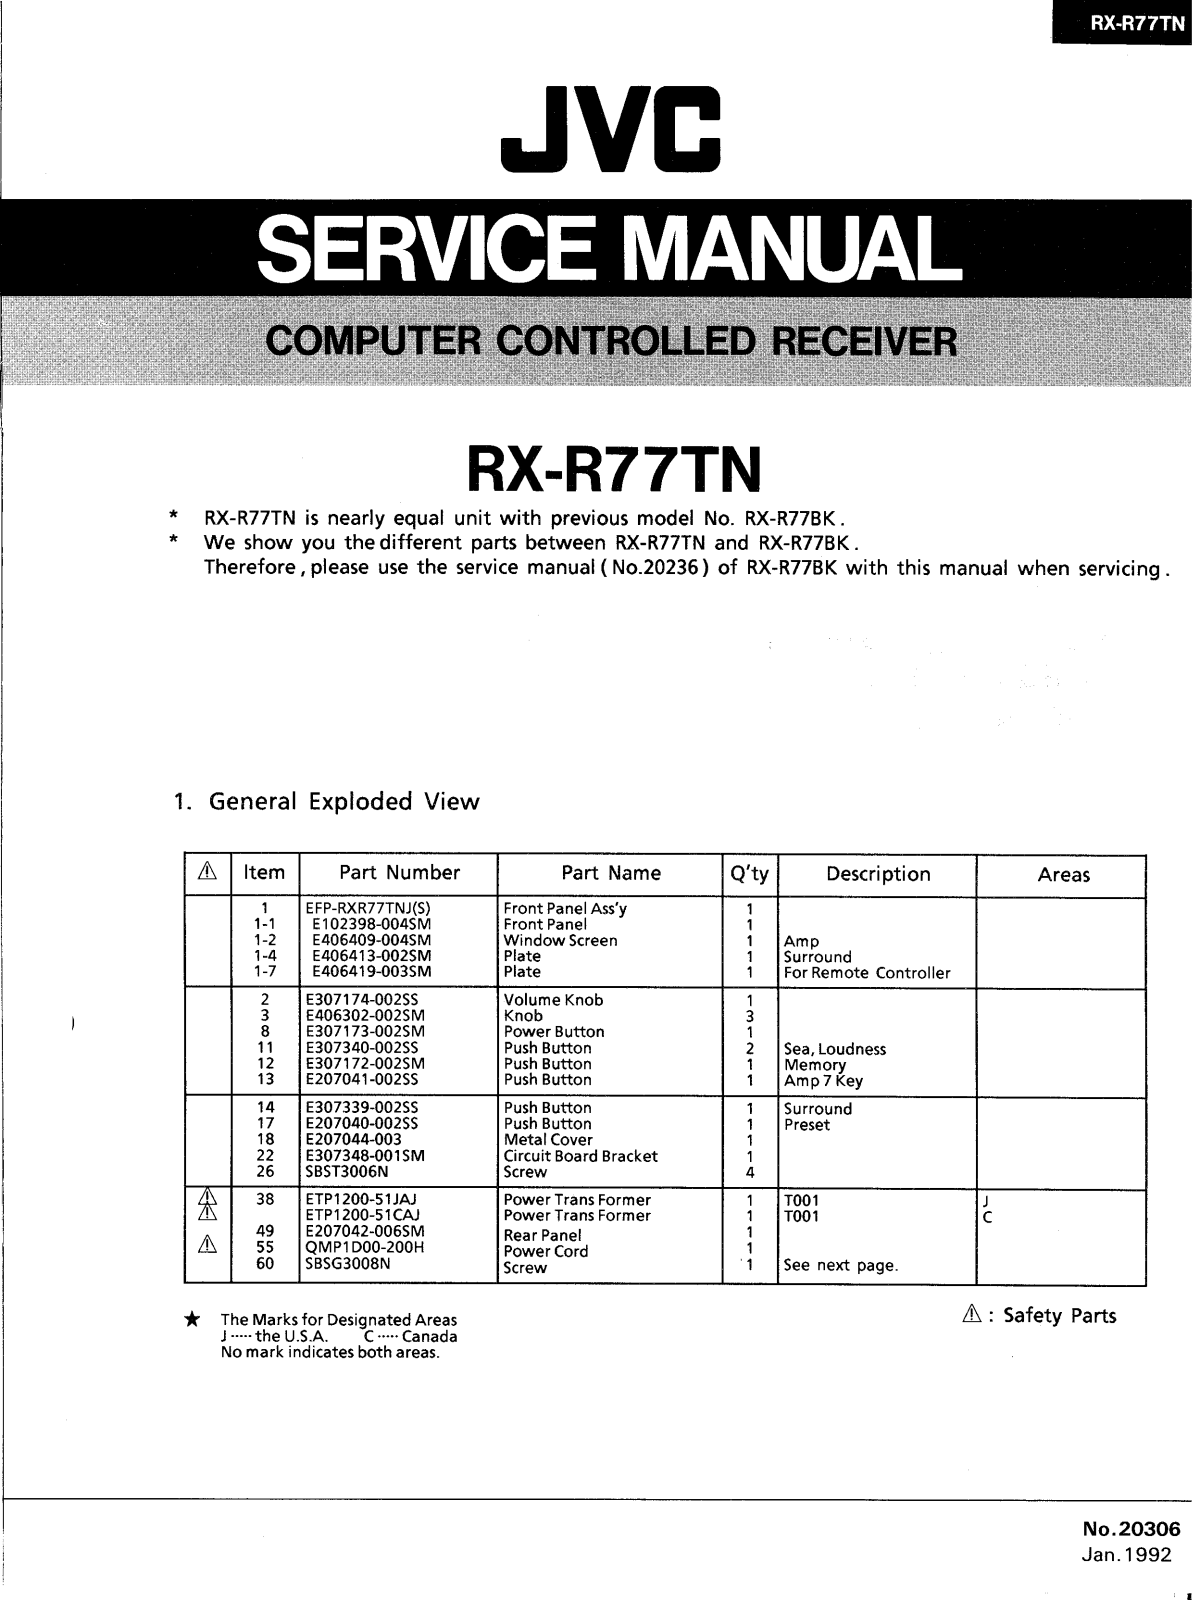 JVC RXR-77-TN Service manual